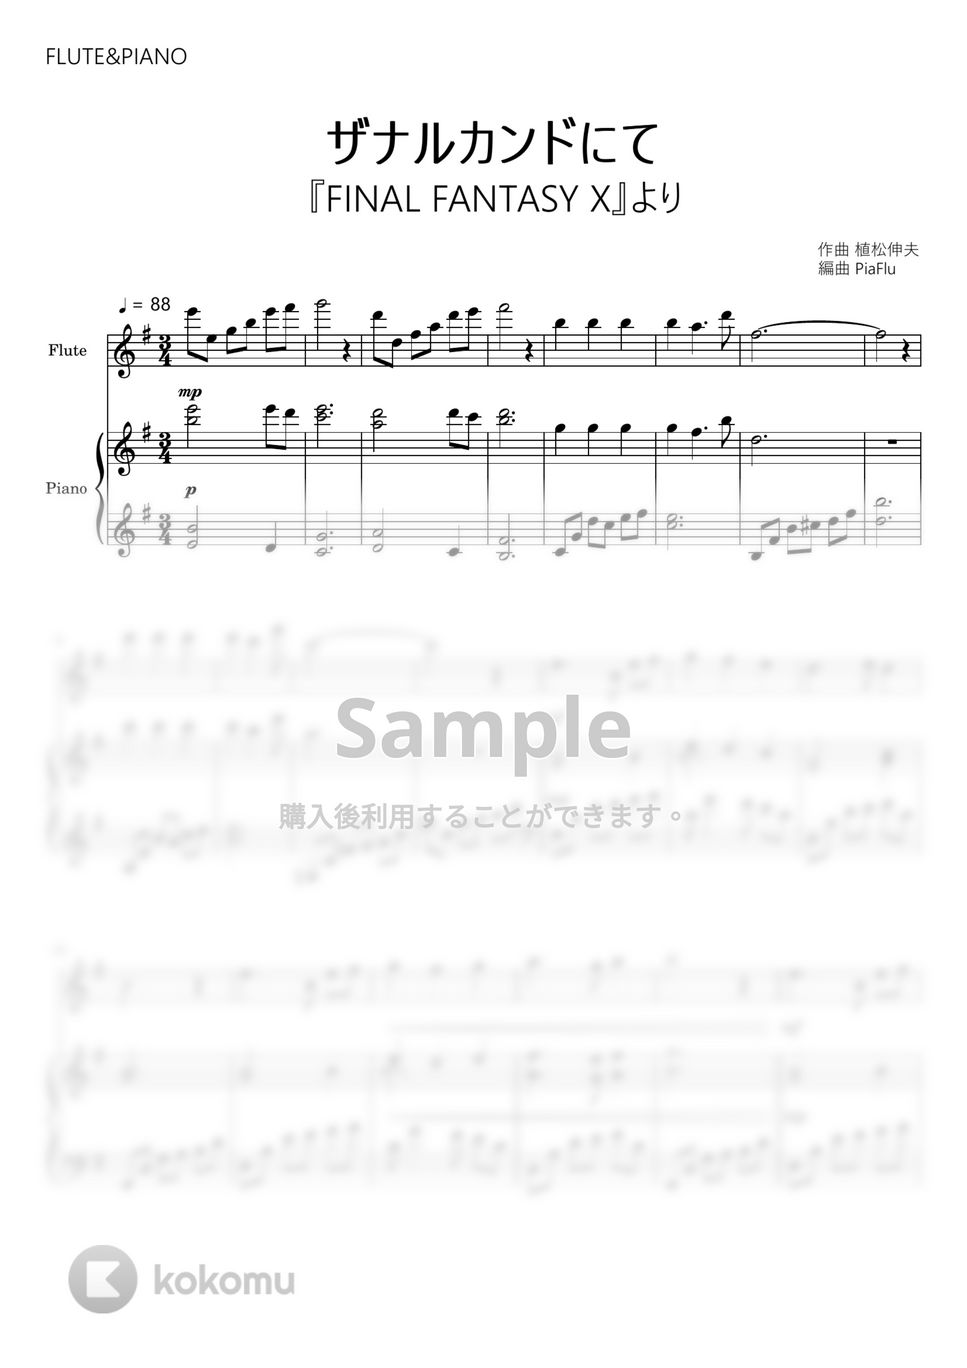 ファイナルファンタジーX - ザナルカンドにて (フルート&ピアノ伴奏) by PiaFlu